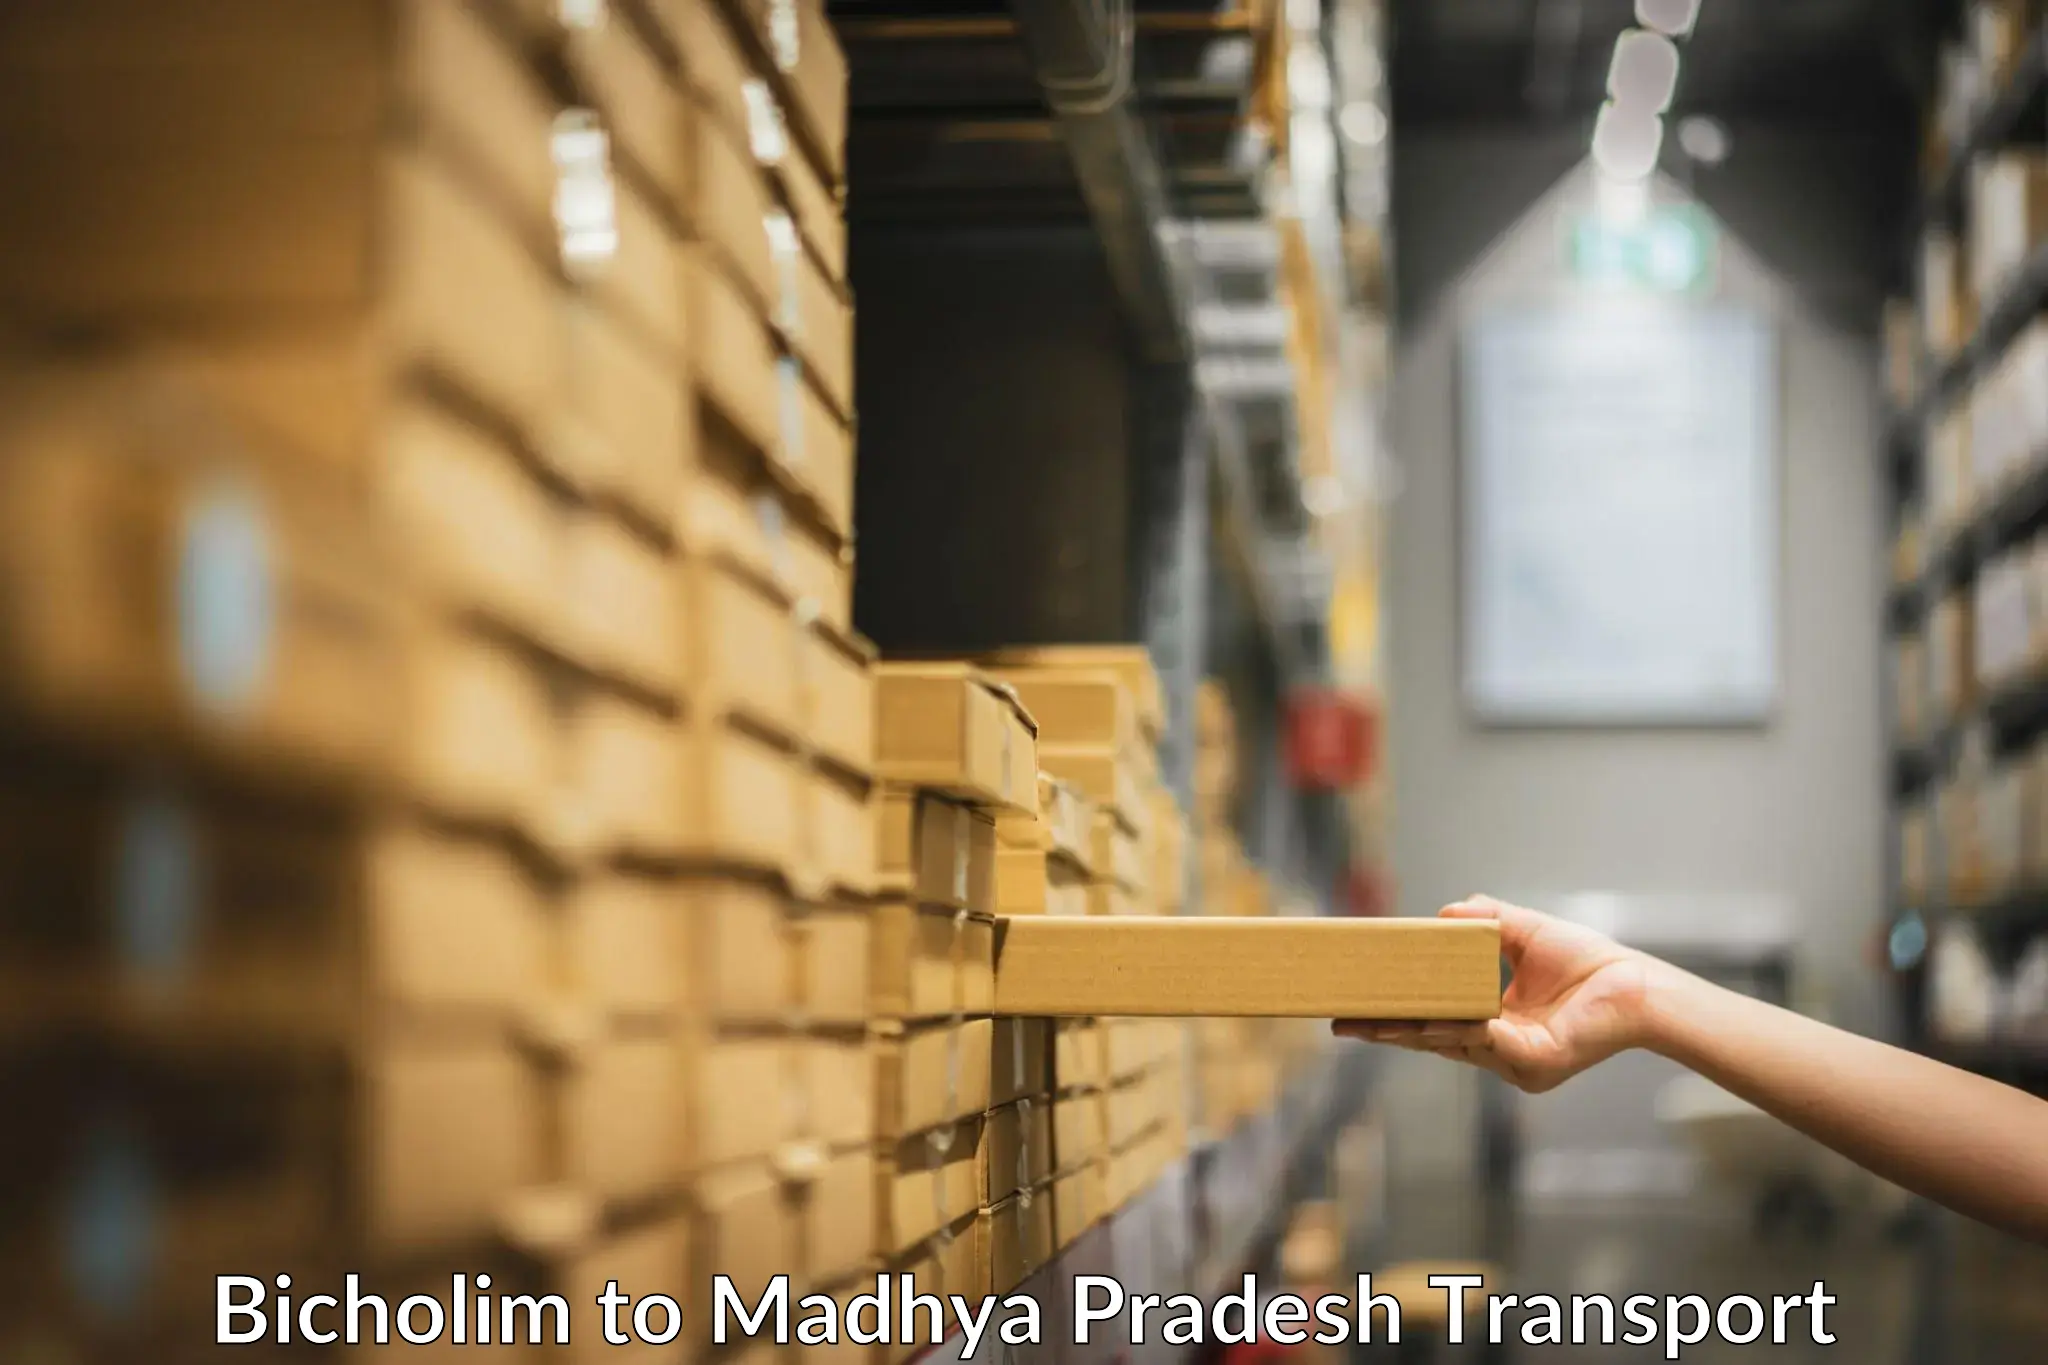 International cargo transportation services Bicholim to Madhya Pradesh